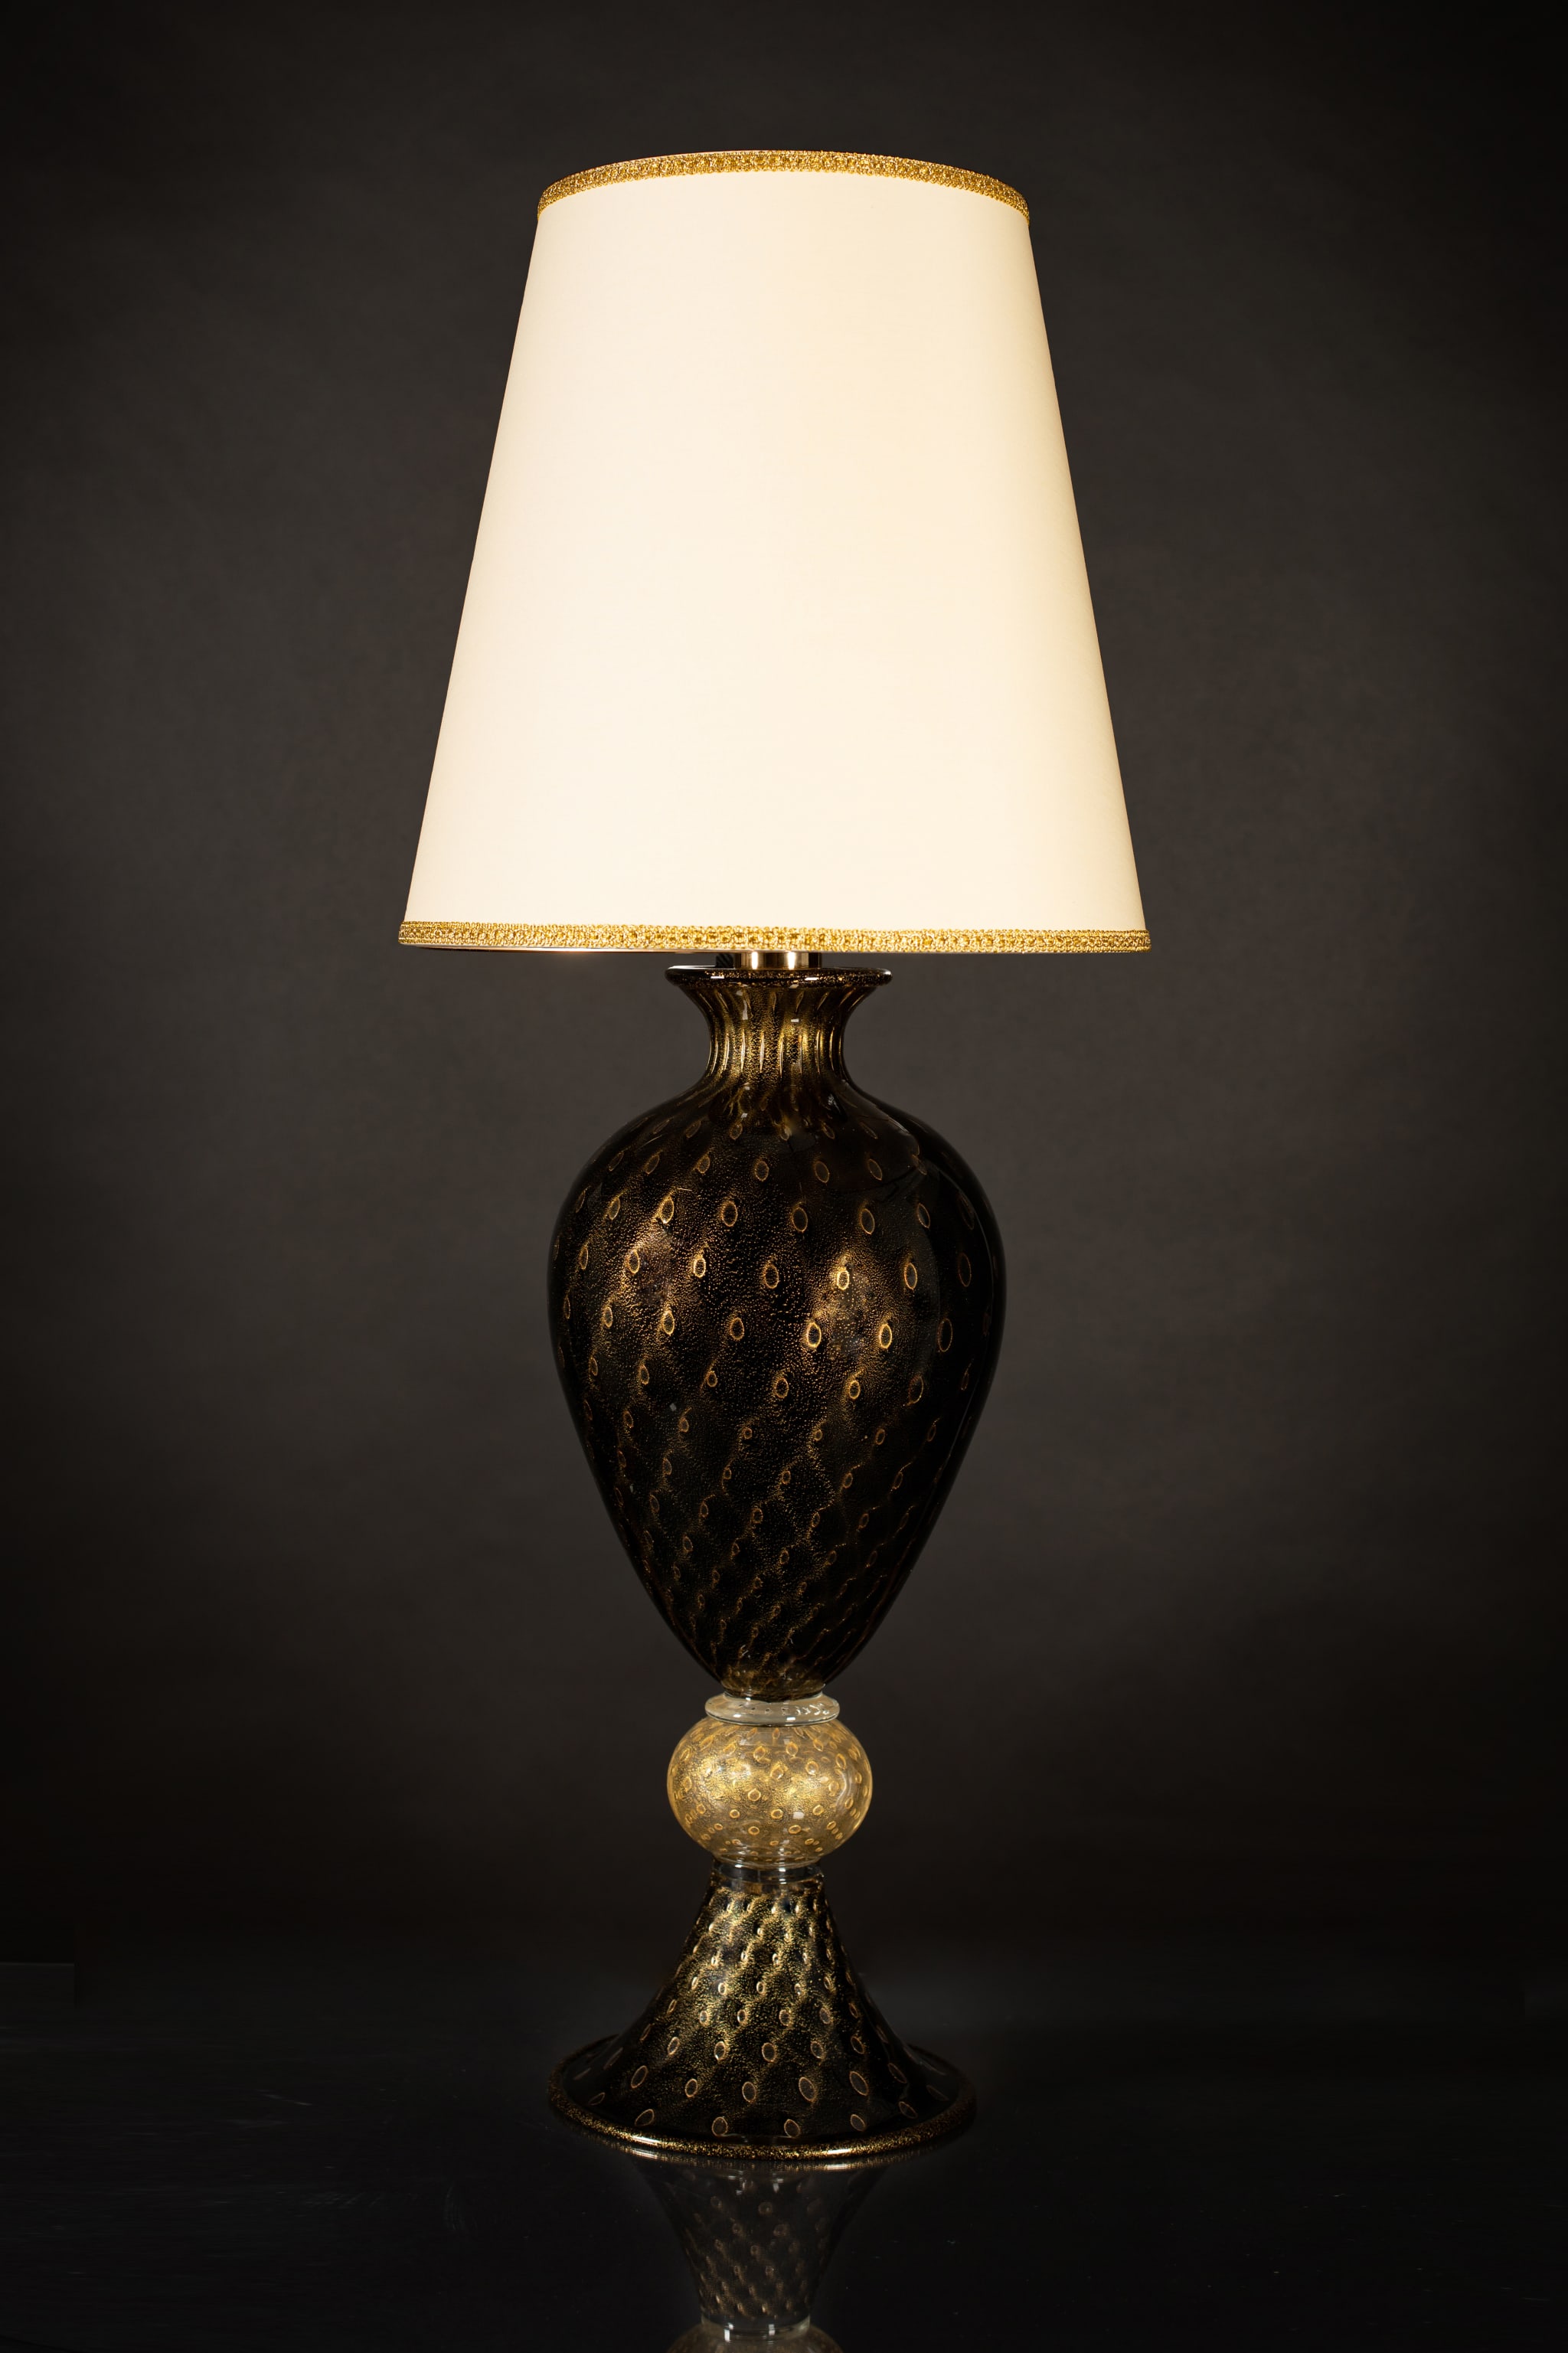 Grande lampe de table noire et dorée #1 - Vue alternative 1